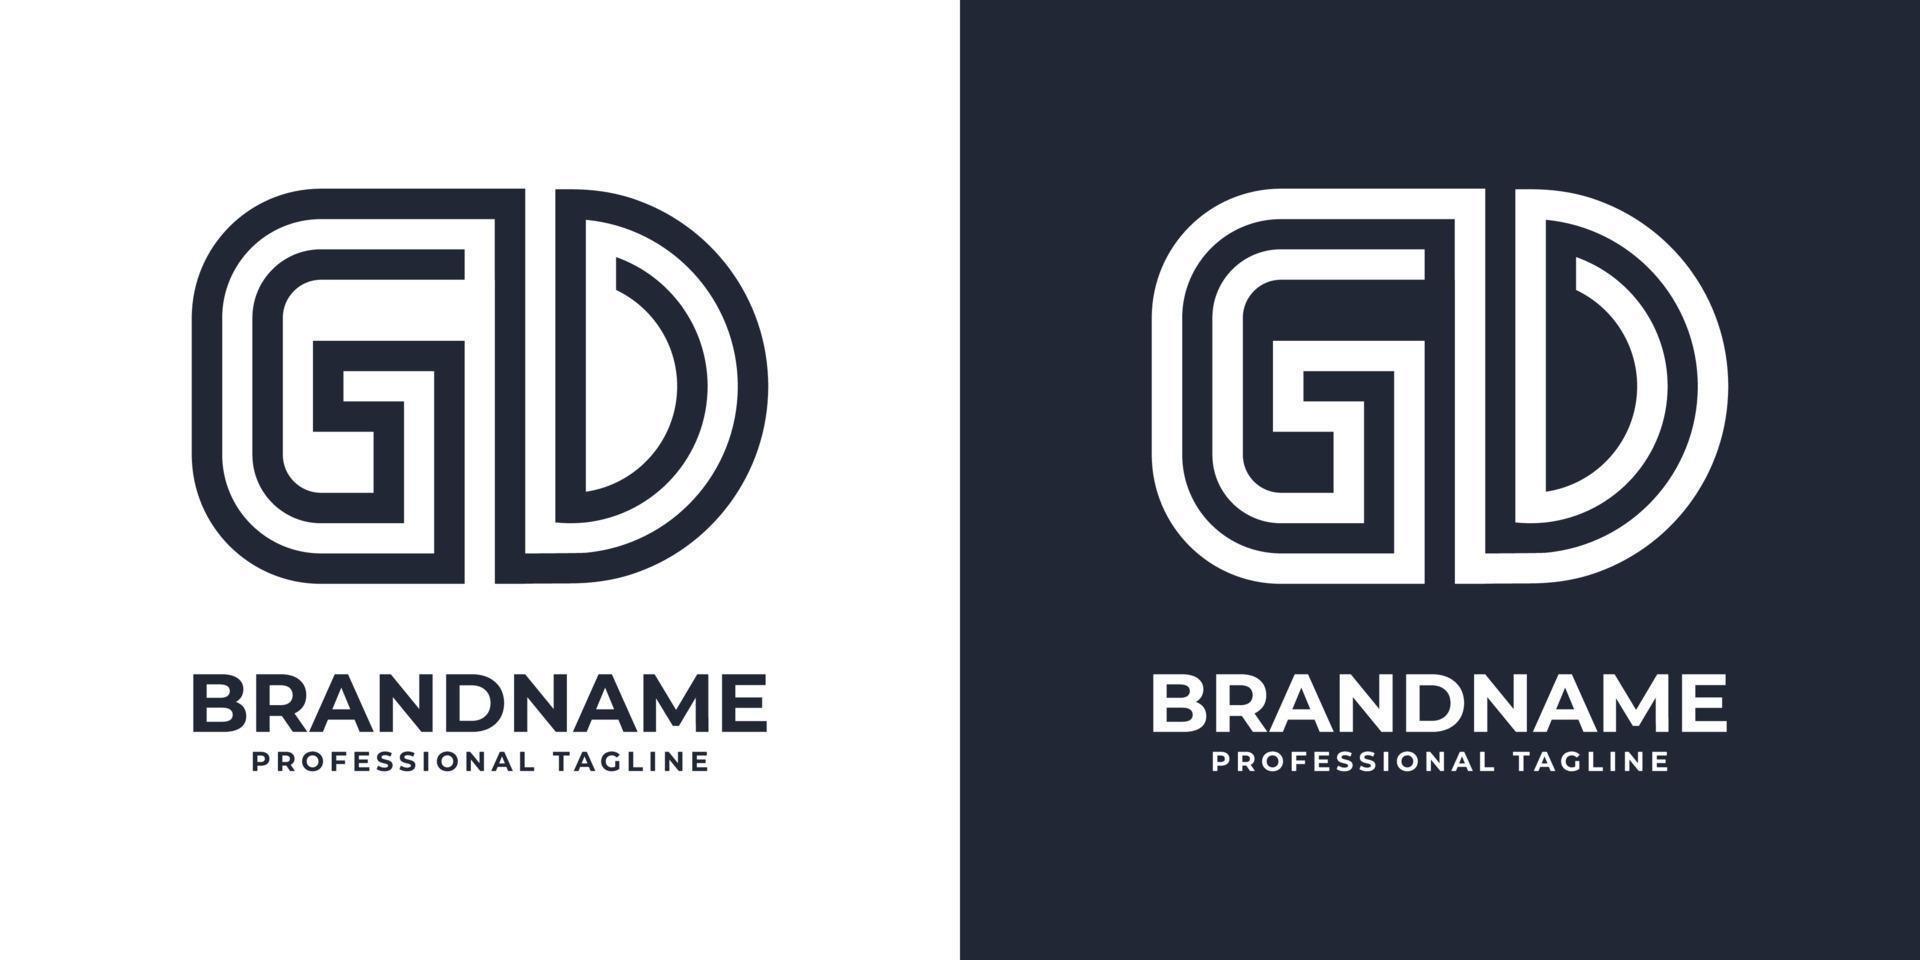 brev gd eller dg global teknologi monogram logotyp, lämplig för några företag med gd eller dg initialer. vektor